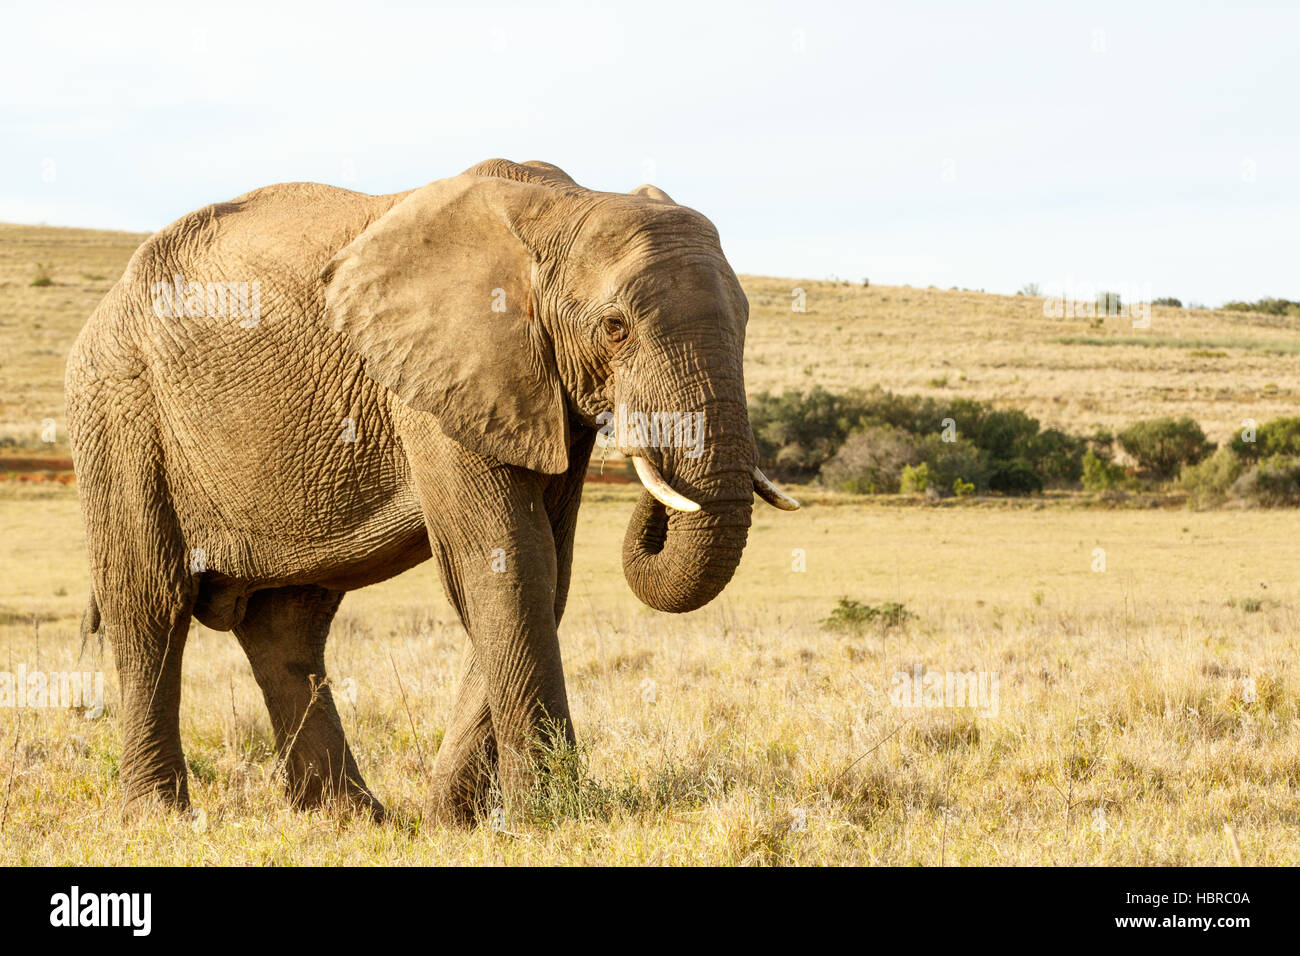 L'éléphant africain mange de l'herbe dans un champ Banque D'Images